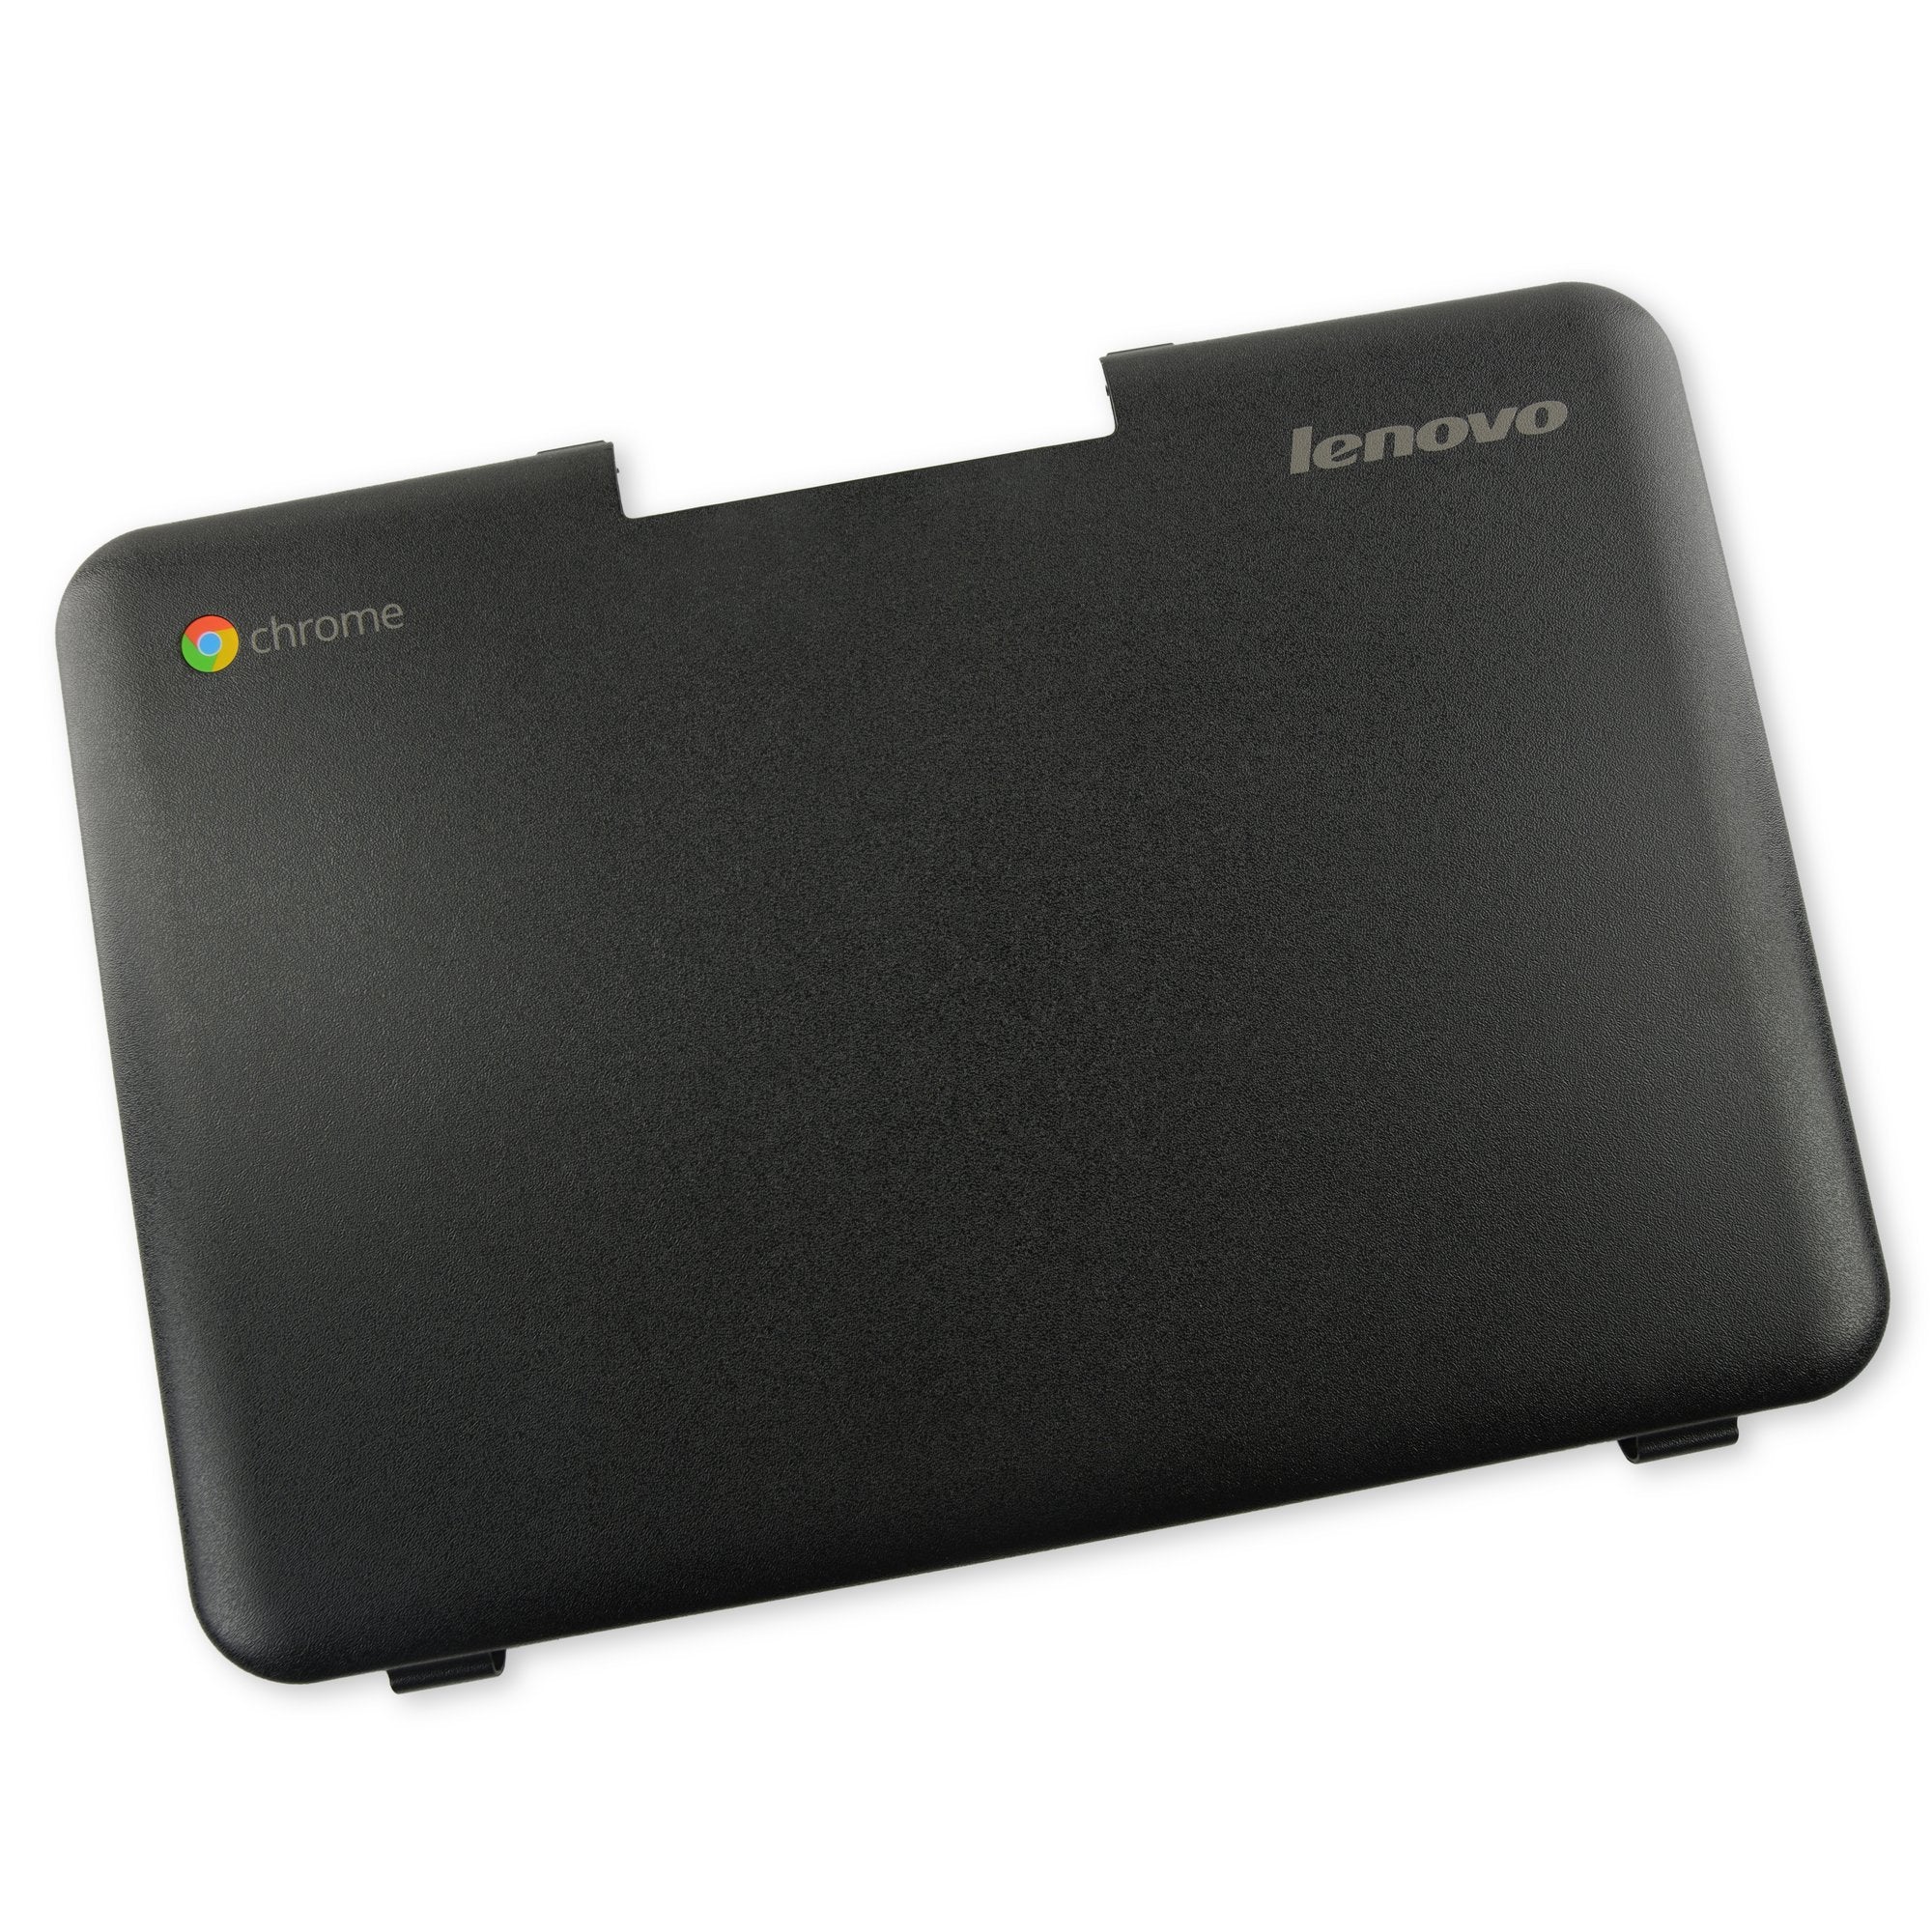 Lenovo Chromebook 11 N21 LCD Back Cover